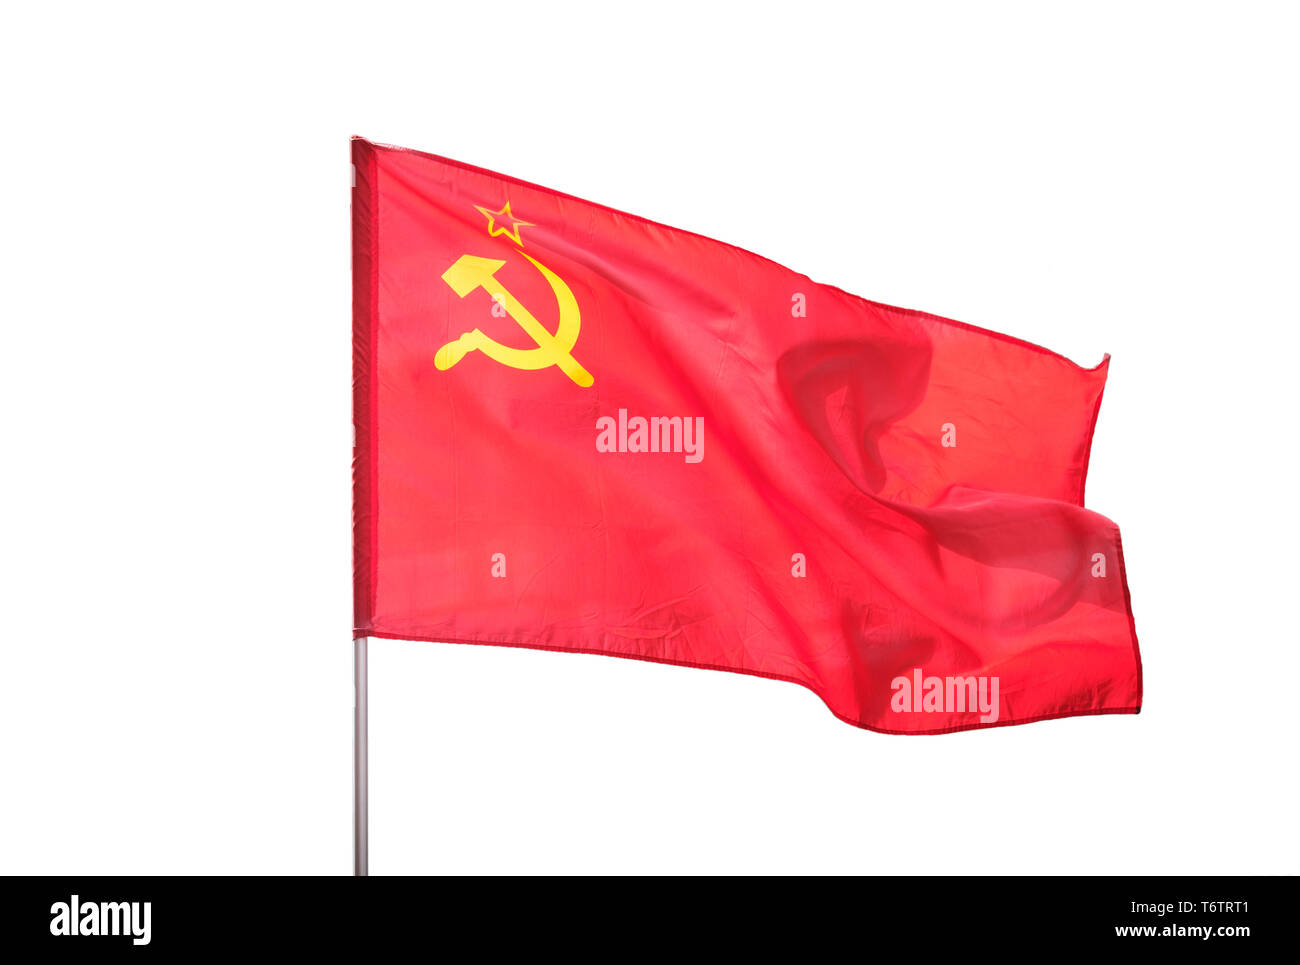 Soviet Union, Ussr flag isolated on white background Stock Photo